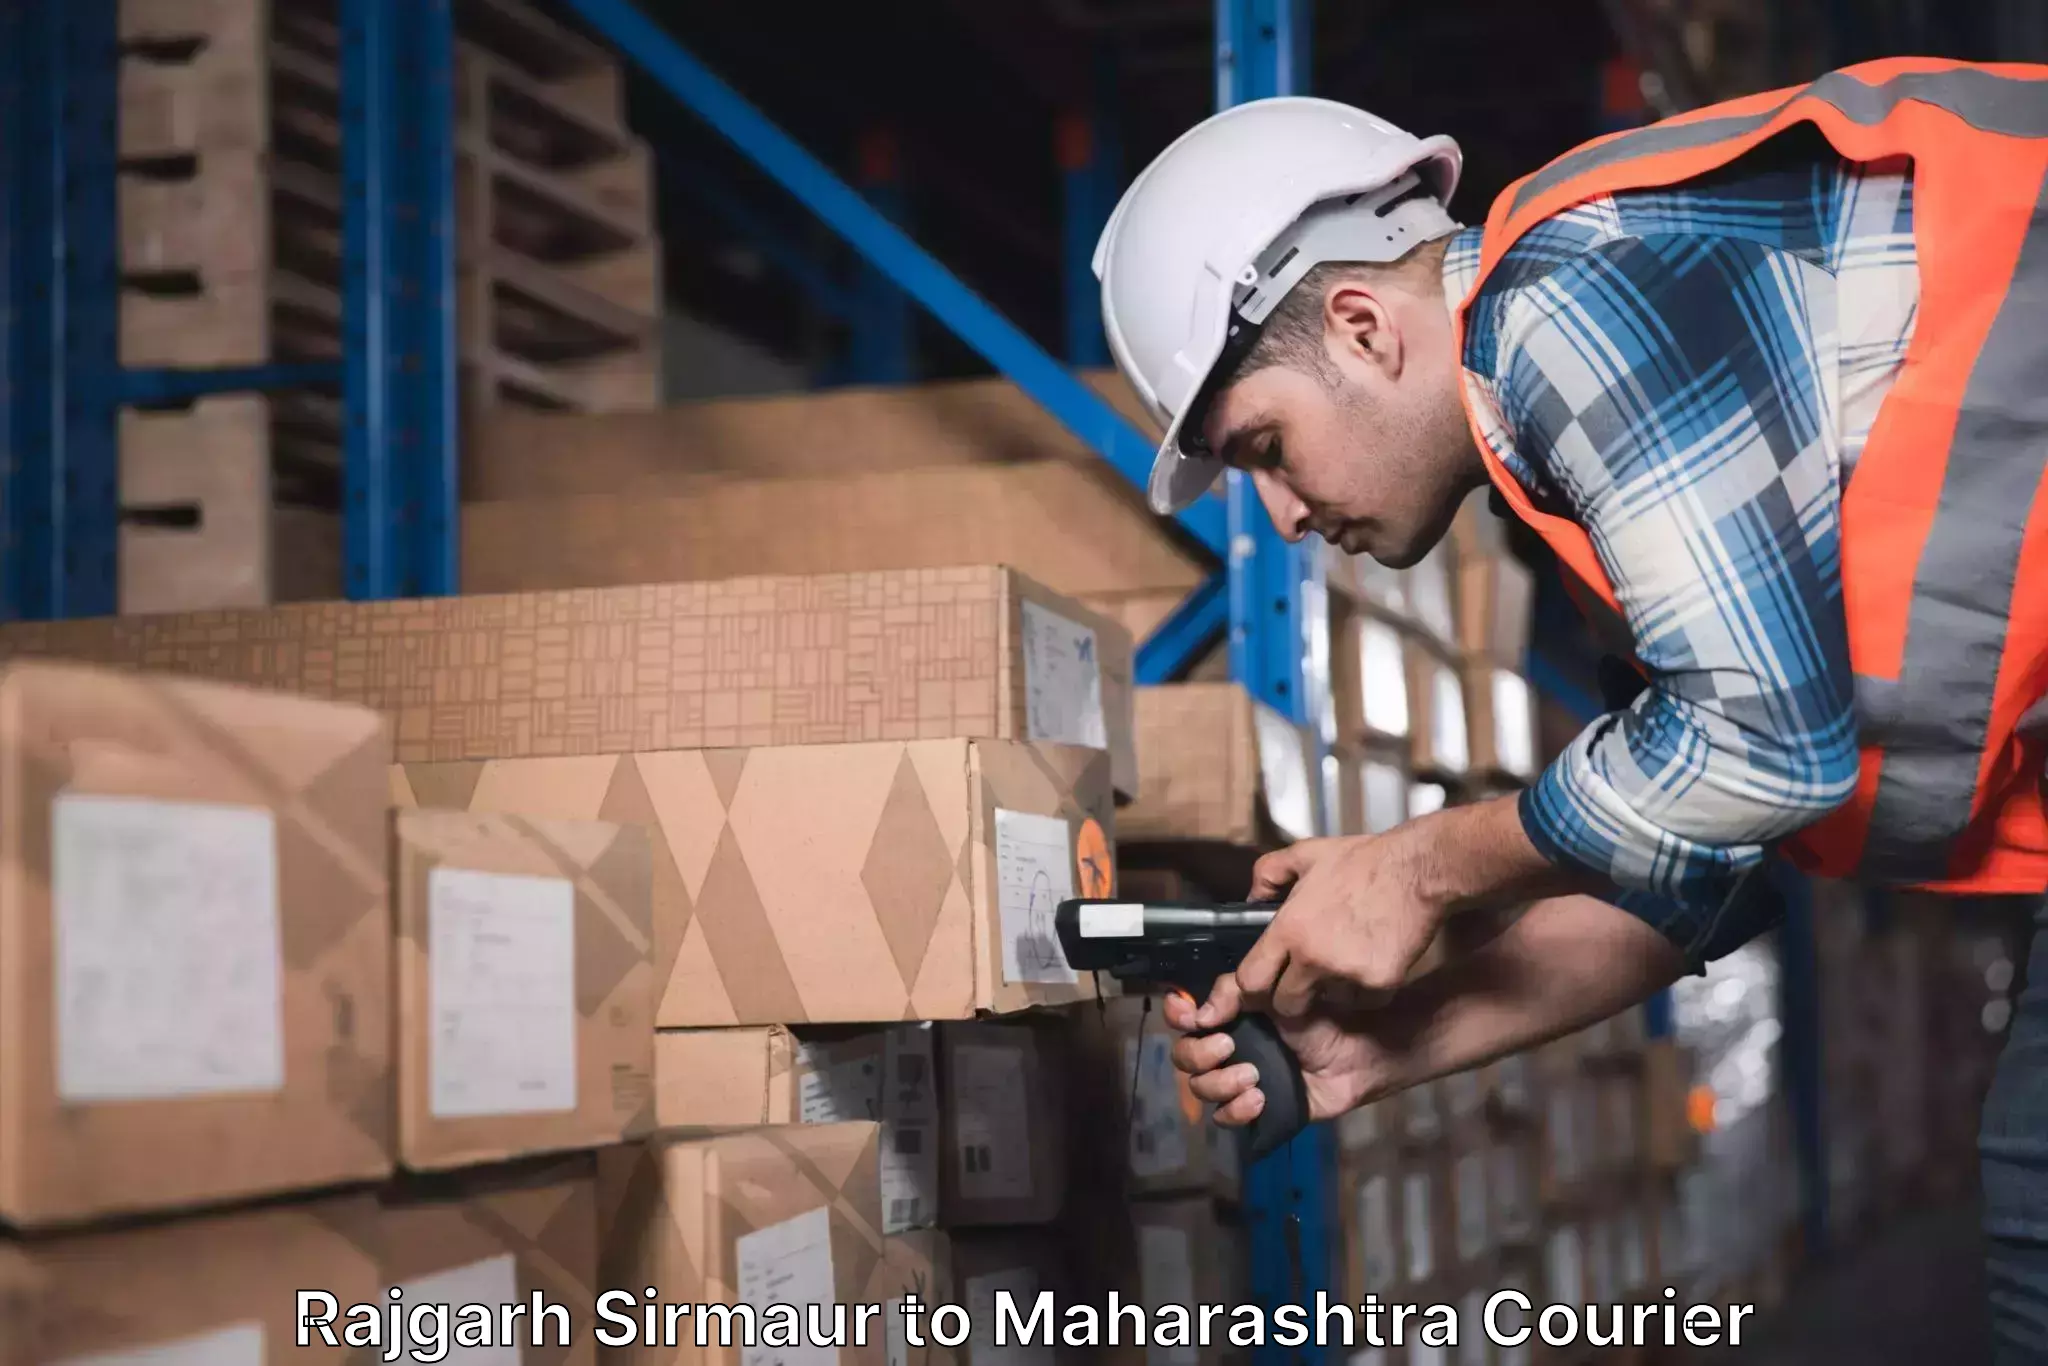 Cargo courier service Rajgarh Sirmaur to Aurangabad